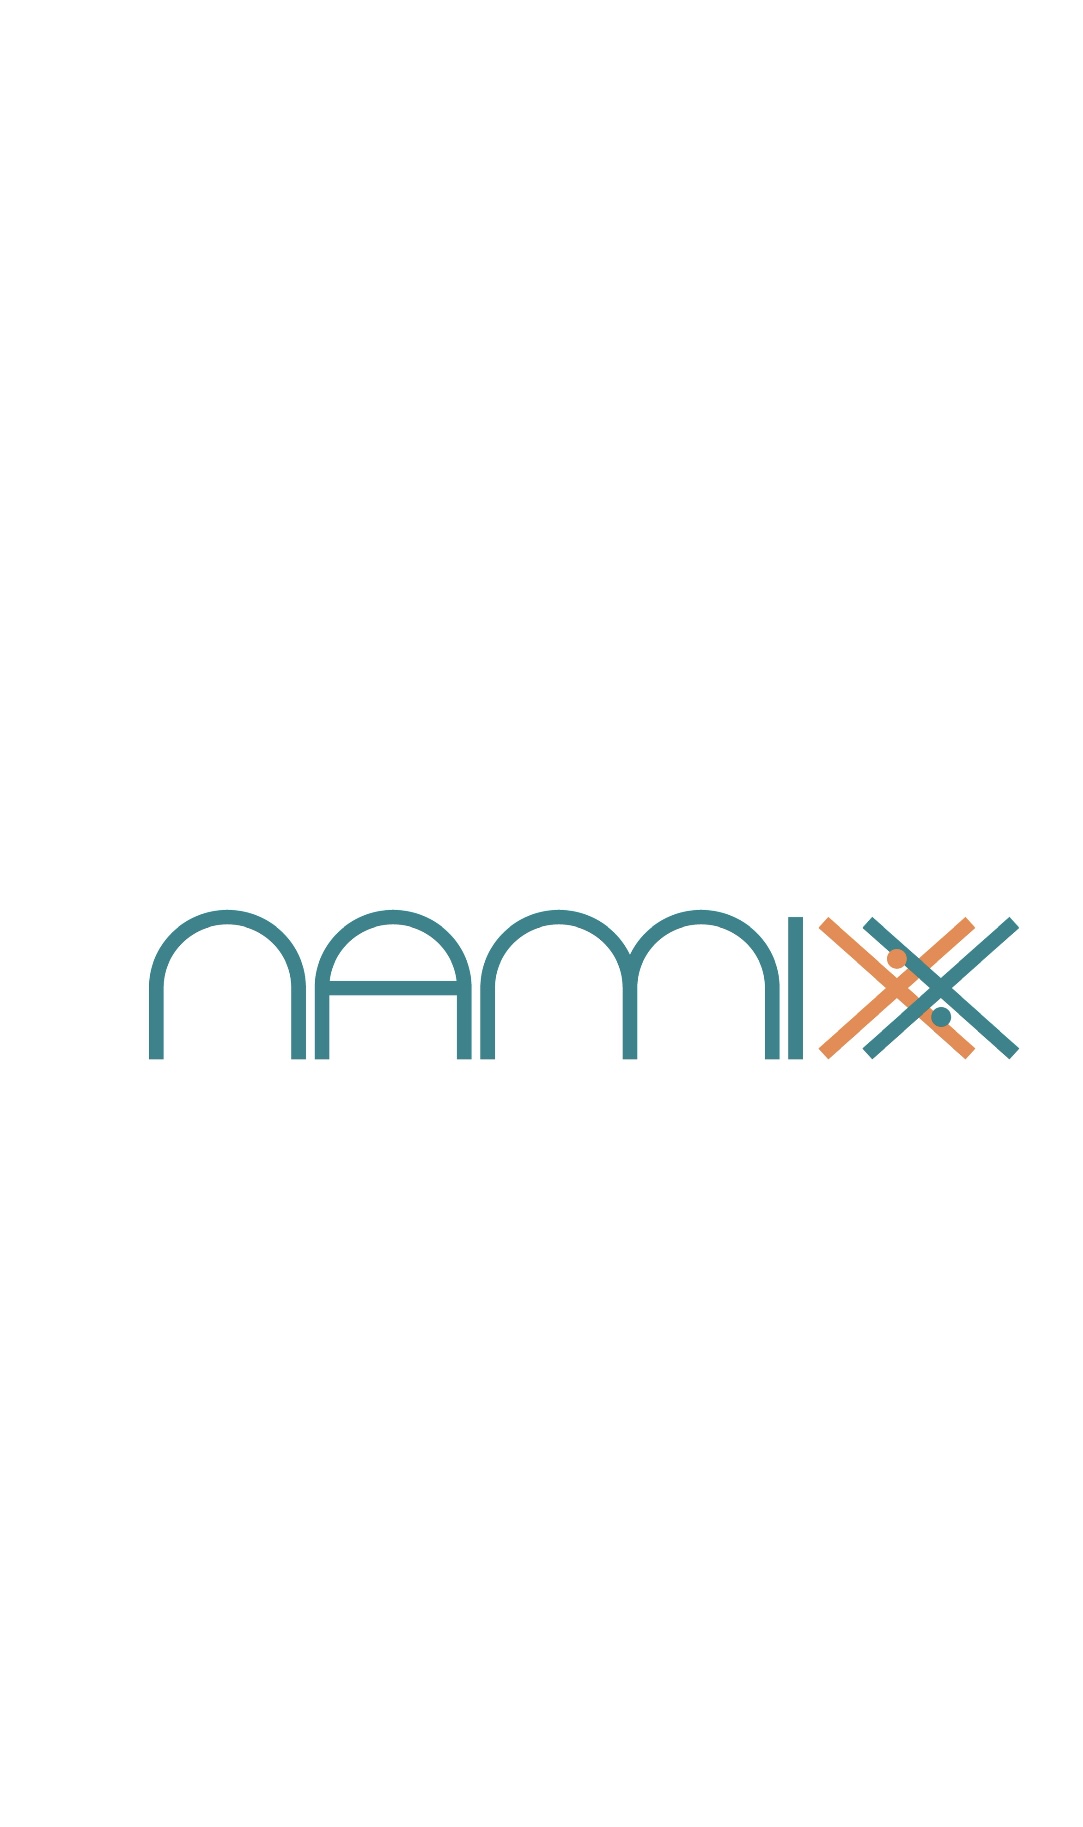 Namixx's logo